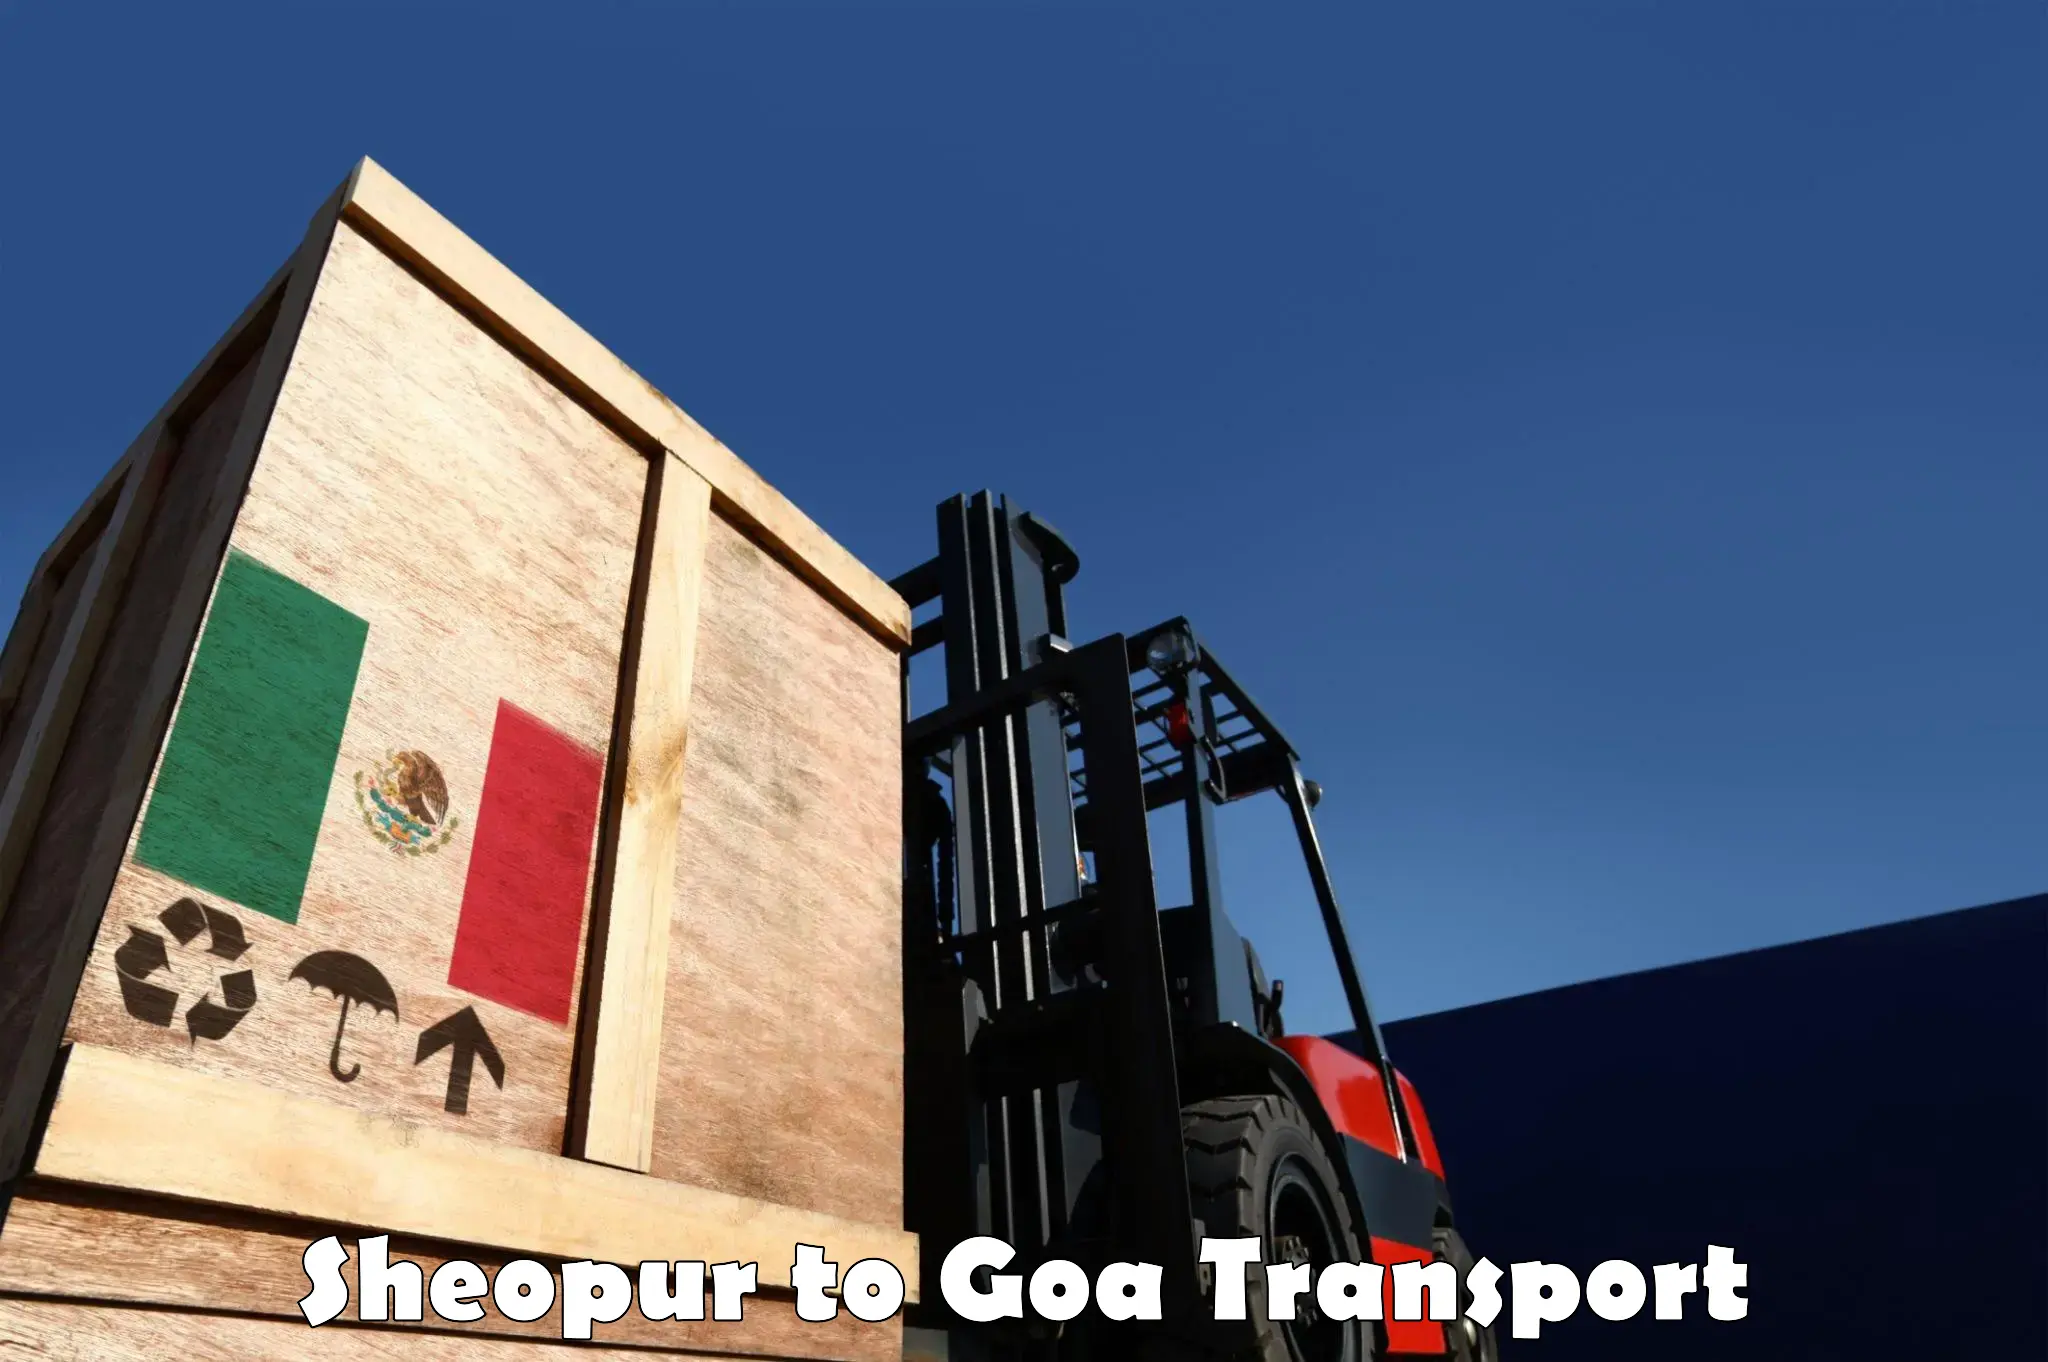 Furniture transport service Sheopur to Panjim